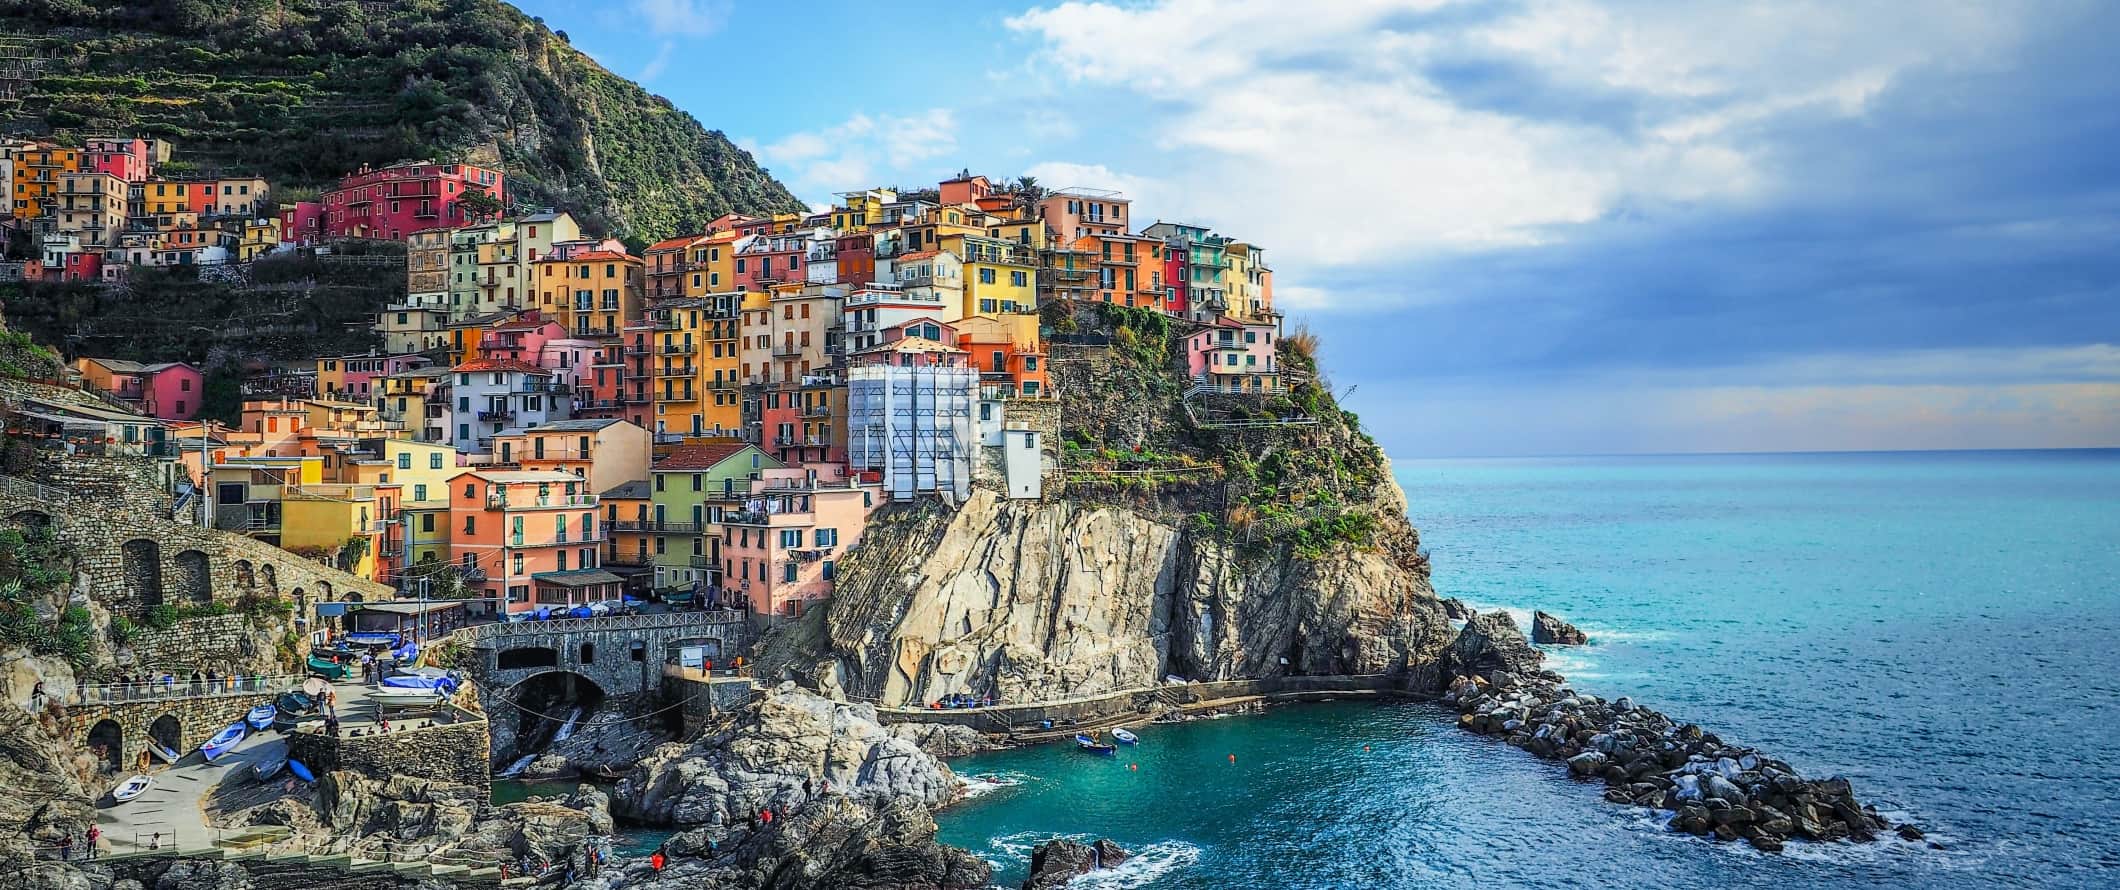 意大利沿海五渔村五彩缤纷的小镇。